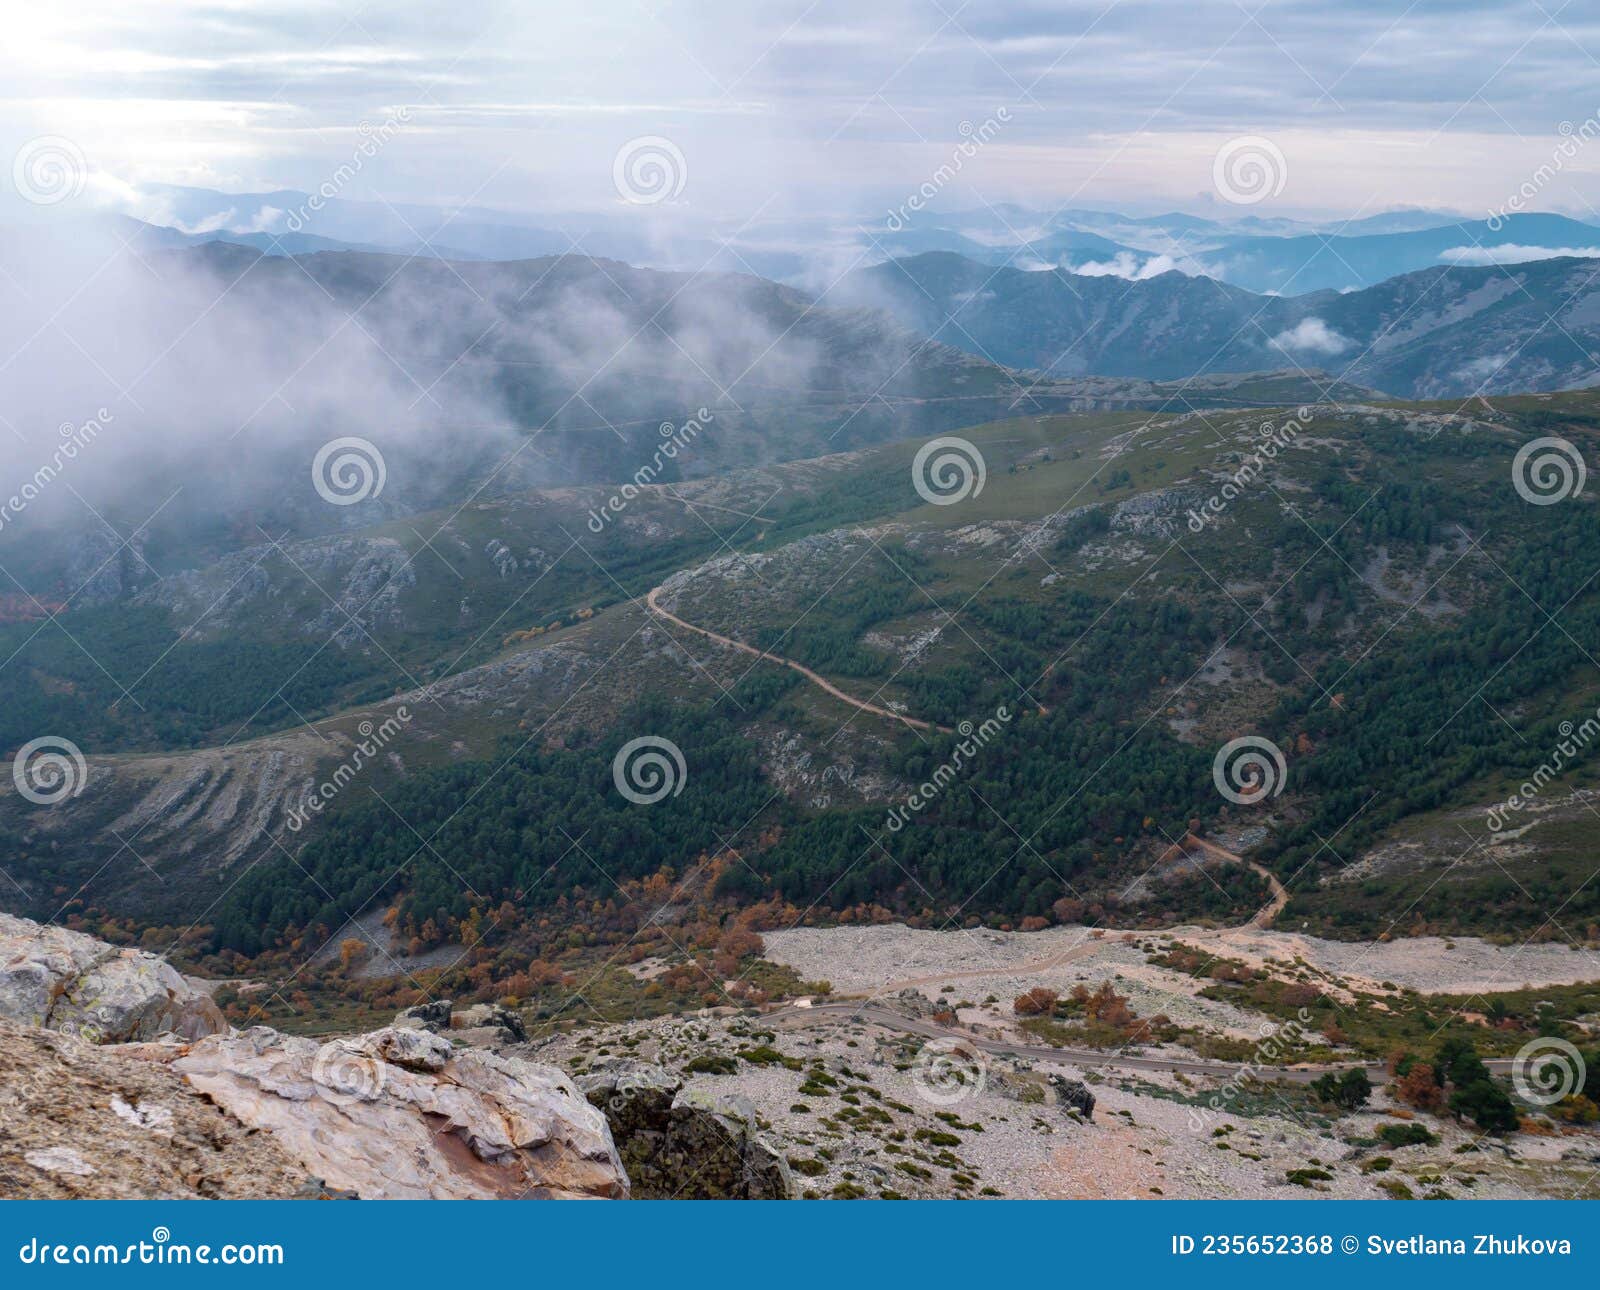 cloudy mountain landscape. view from sierra de francia